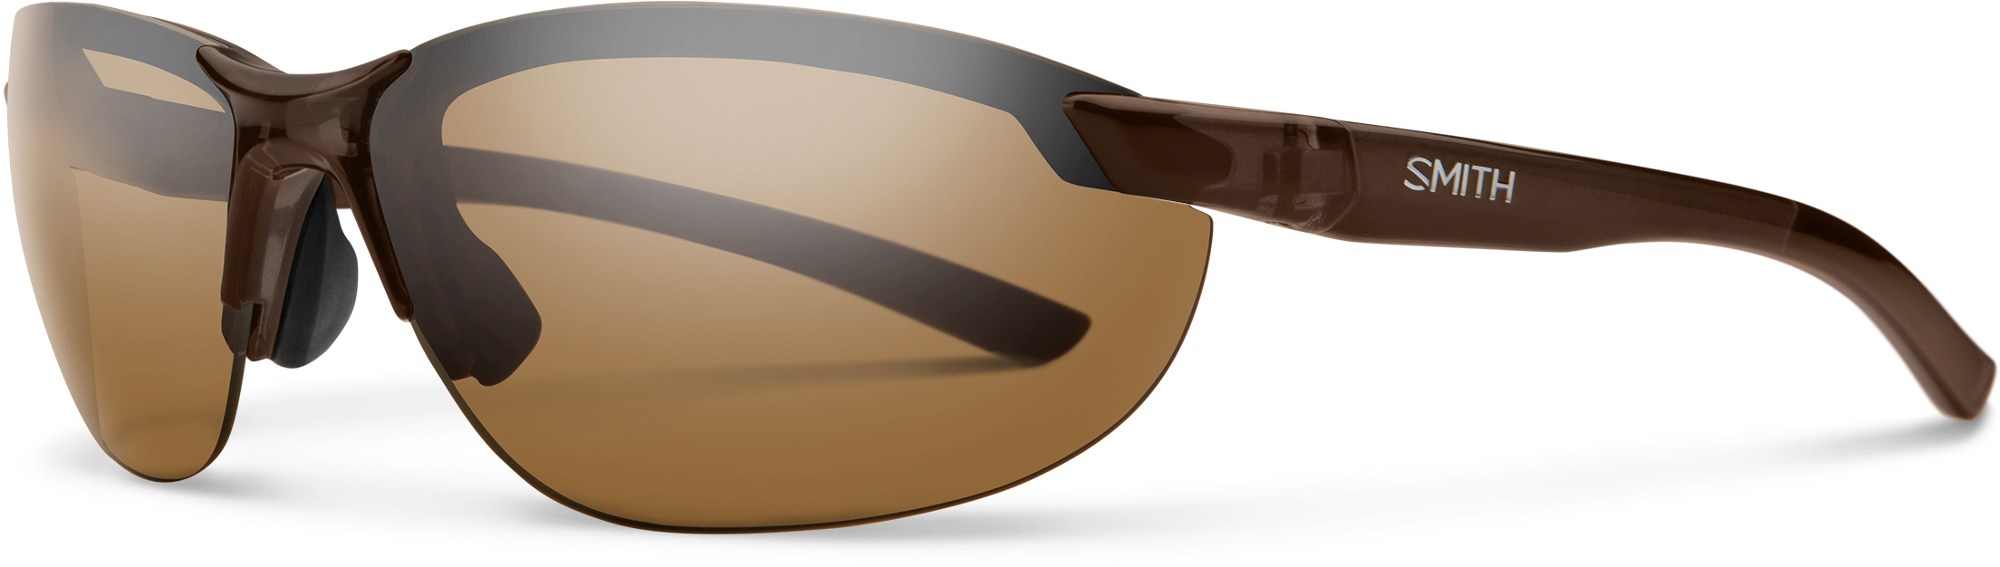 Поляризованные солнцезащитные очки Parallel 2 Smith, коричневый